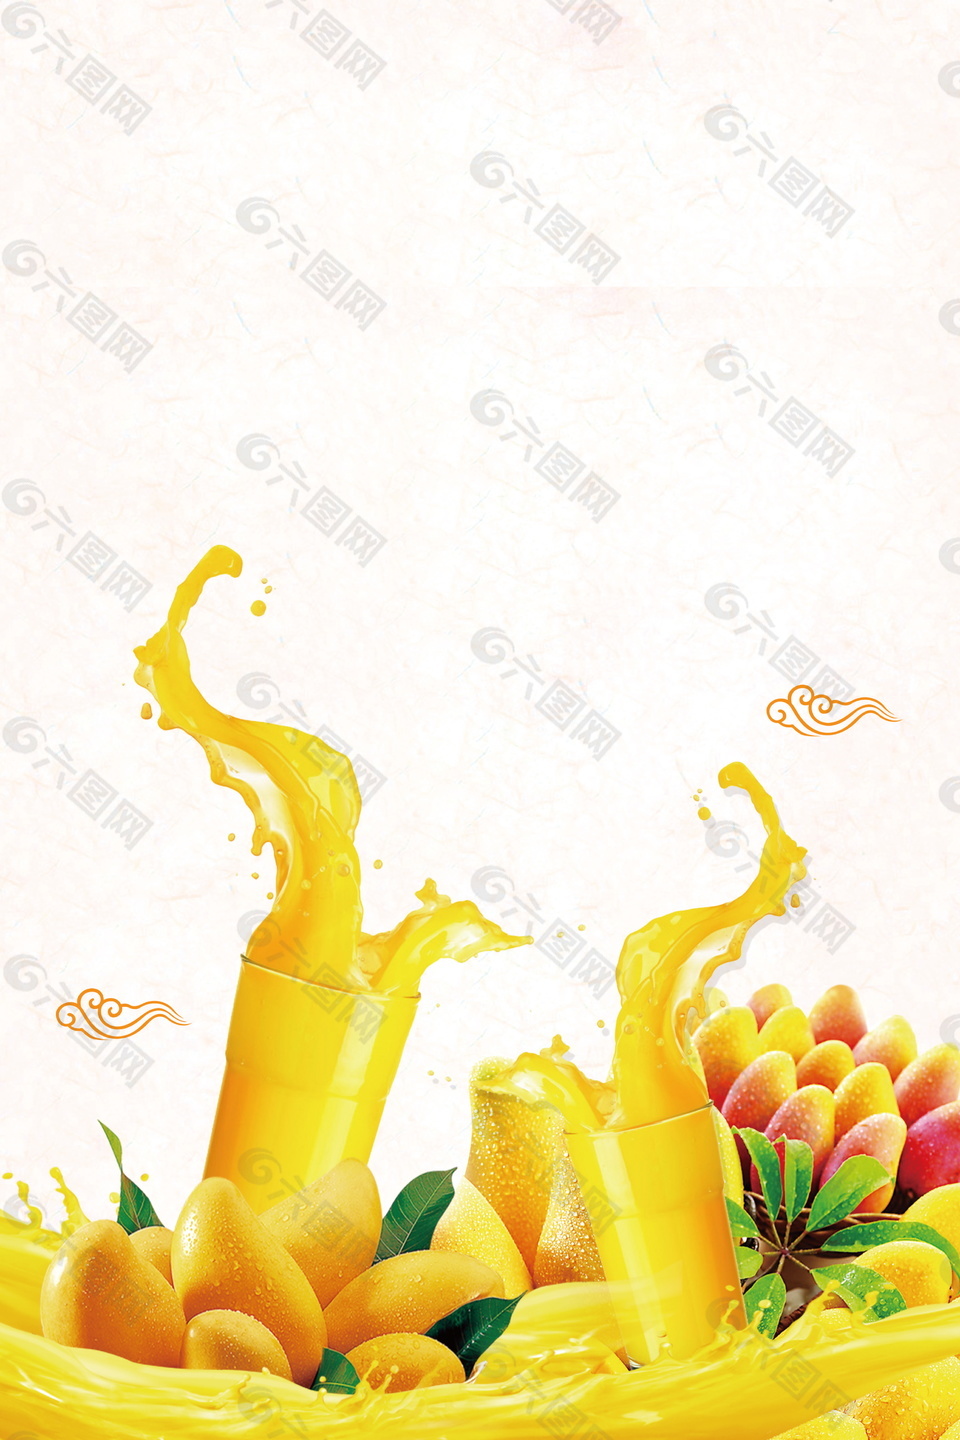 夏季鲜榨金黄芒果汁广告背景素材